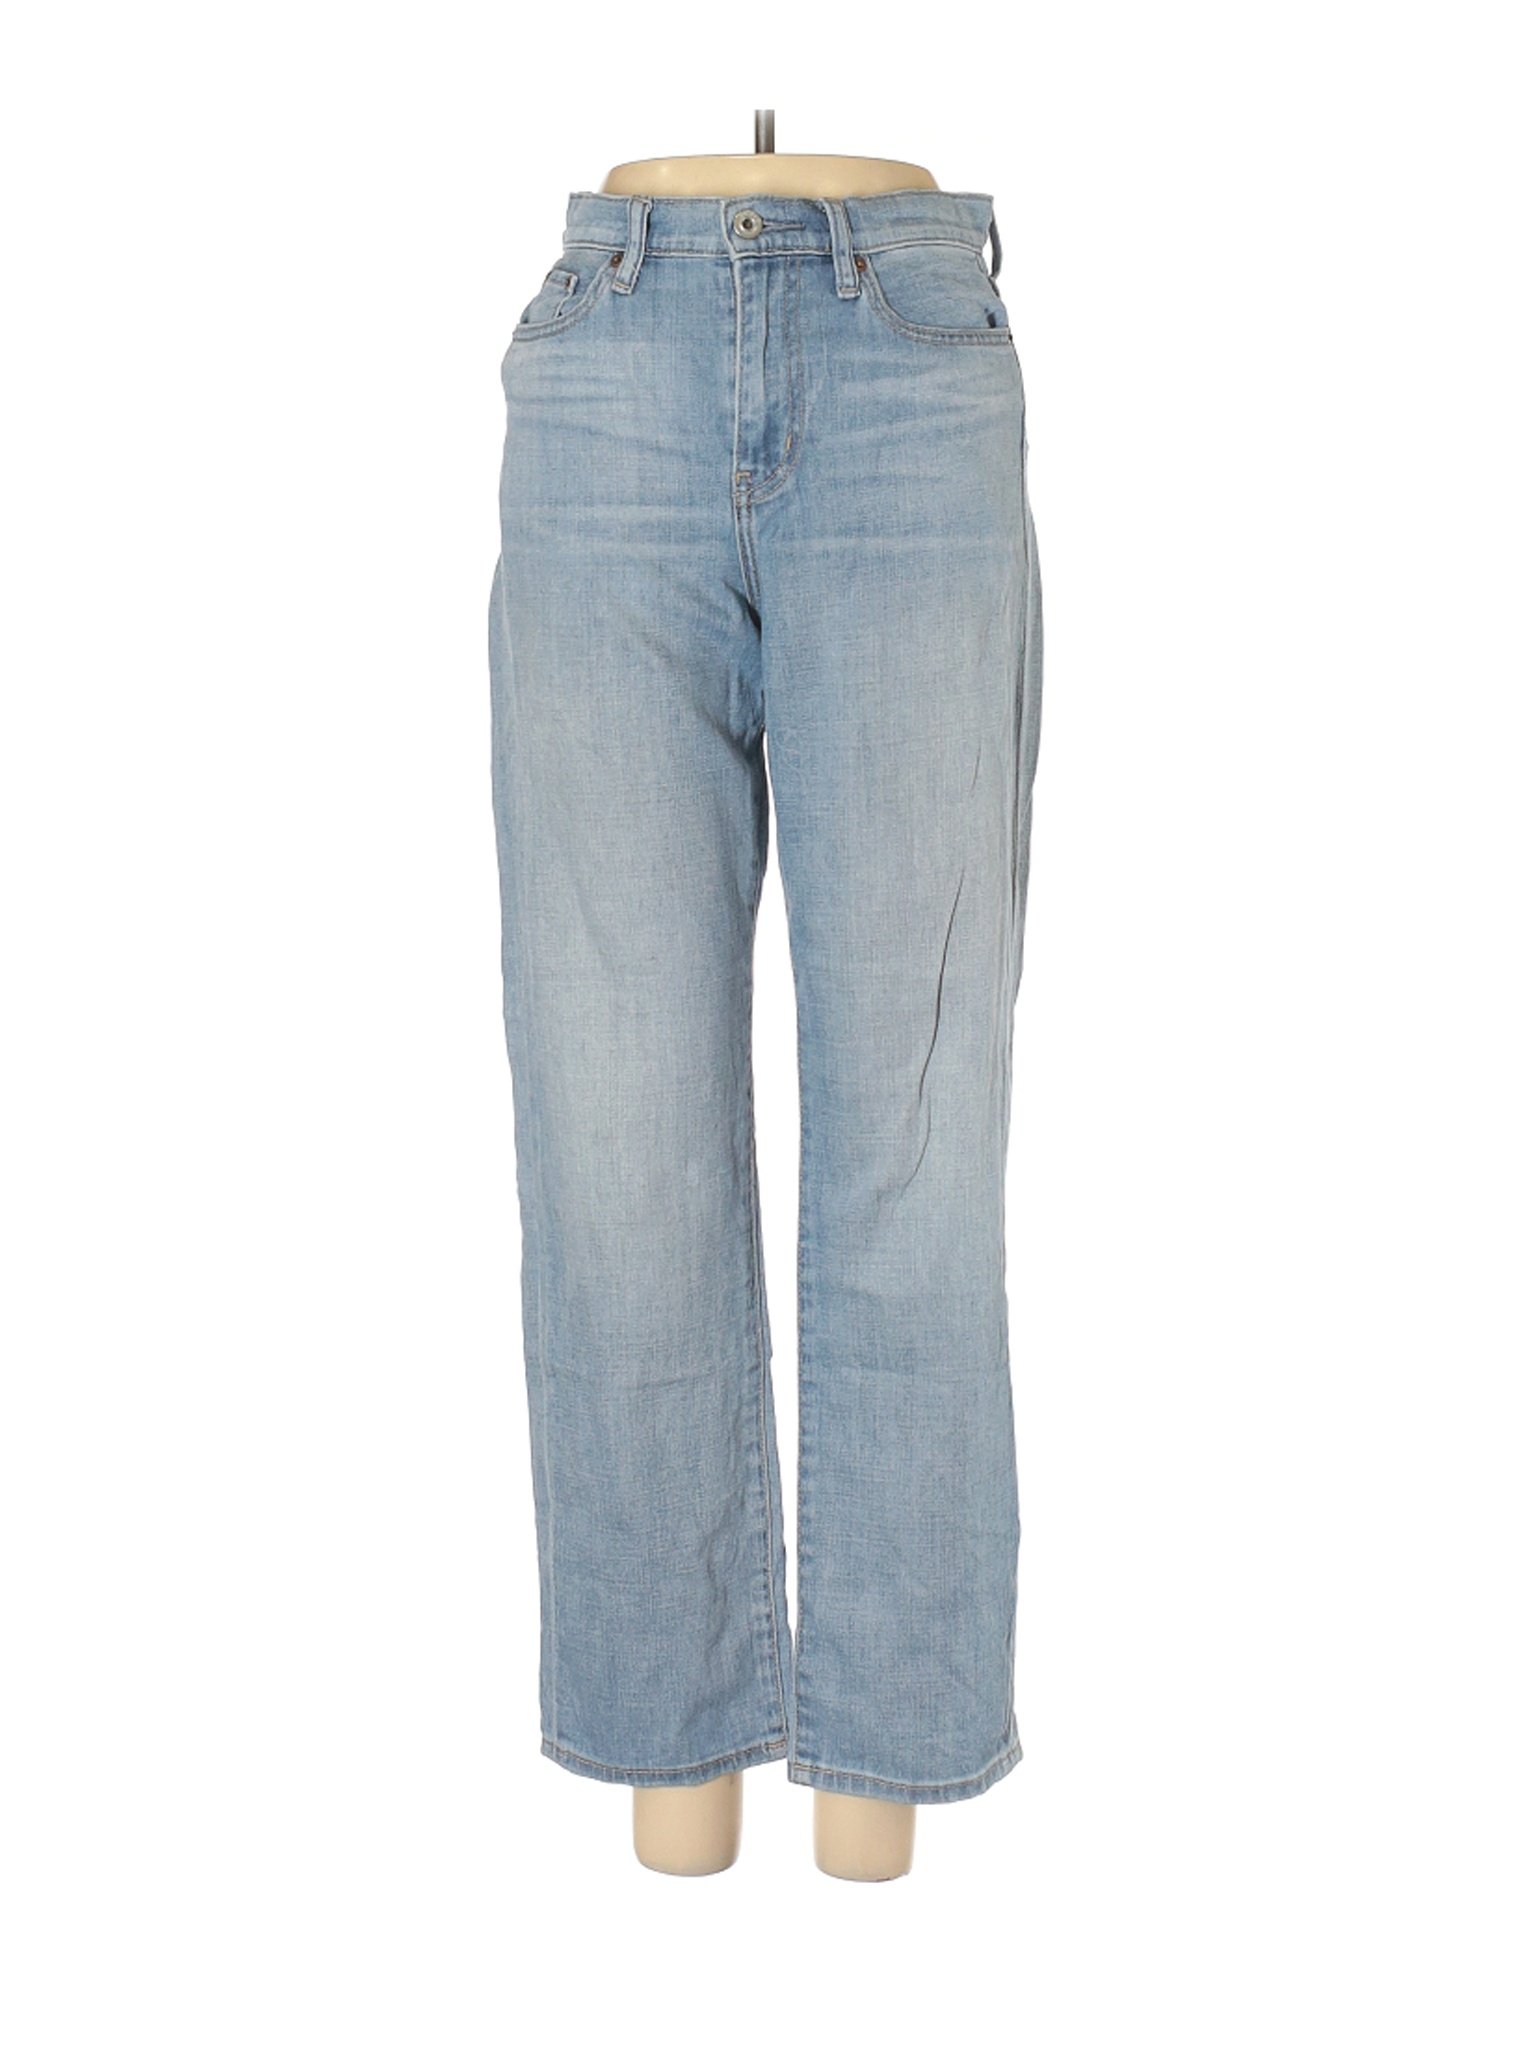 Uniqlo Women Blue Jeans 24W | eBay